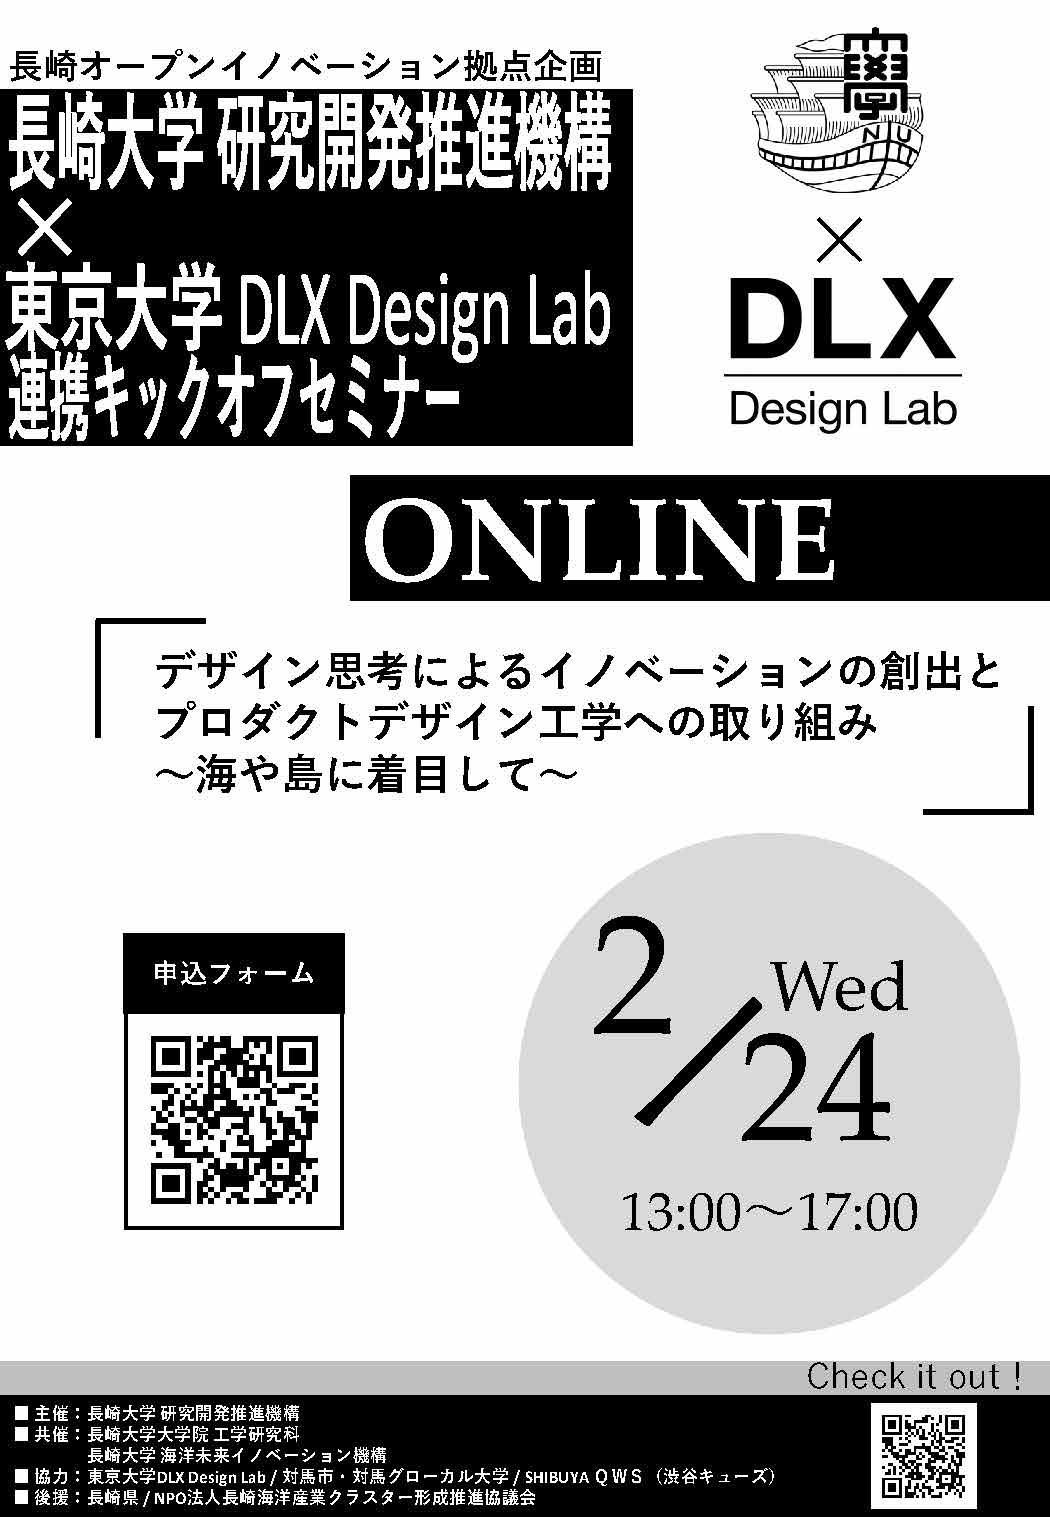 「長崎大学研究開発推進機構×東京大学DLX Design Lab連携キックオフセミナー」 